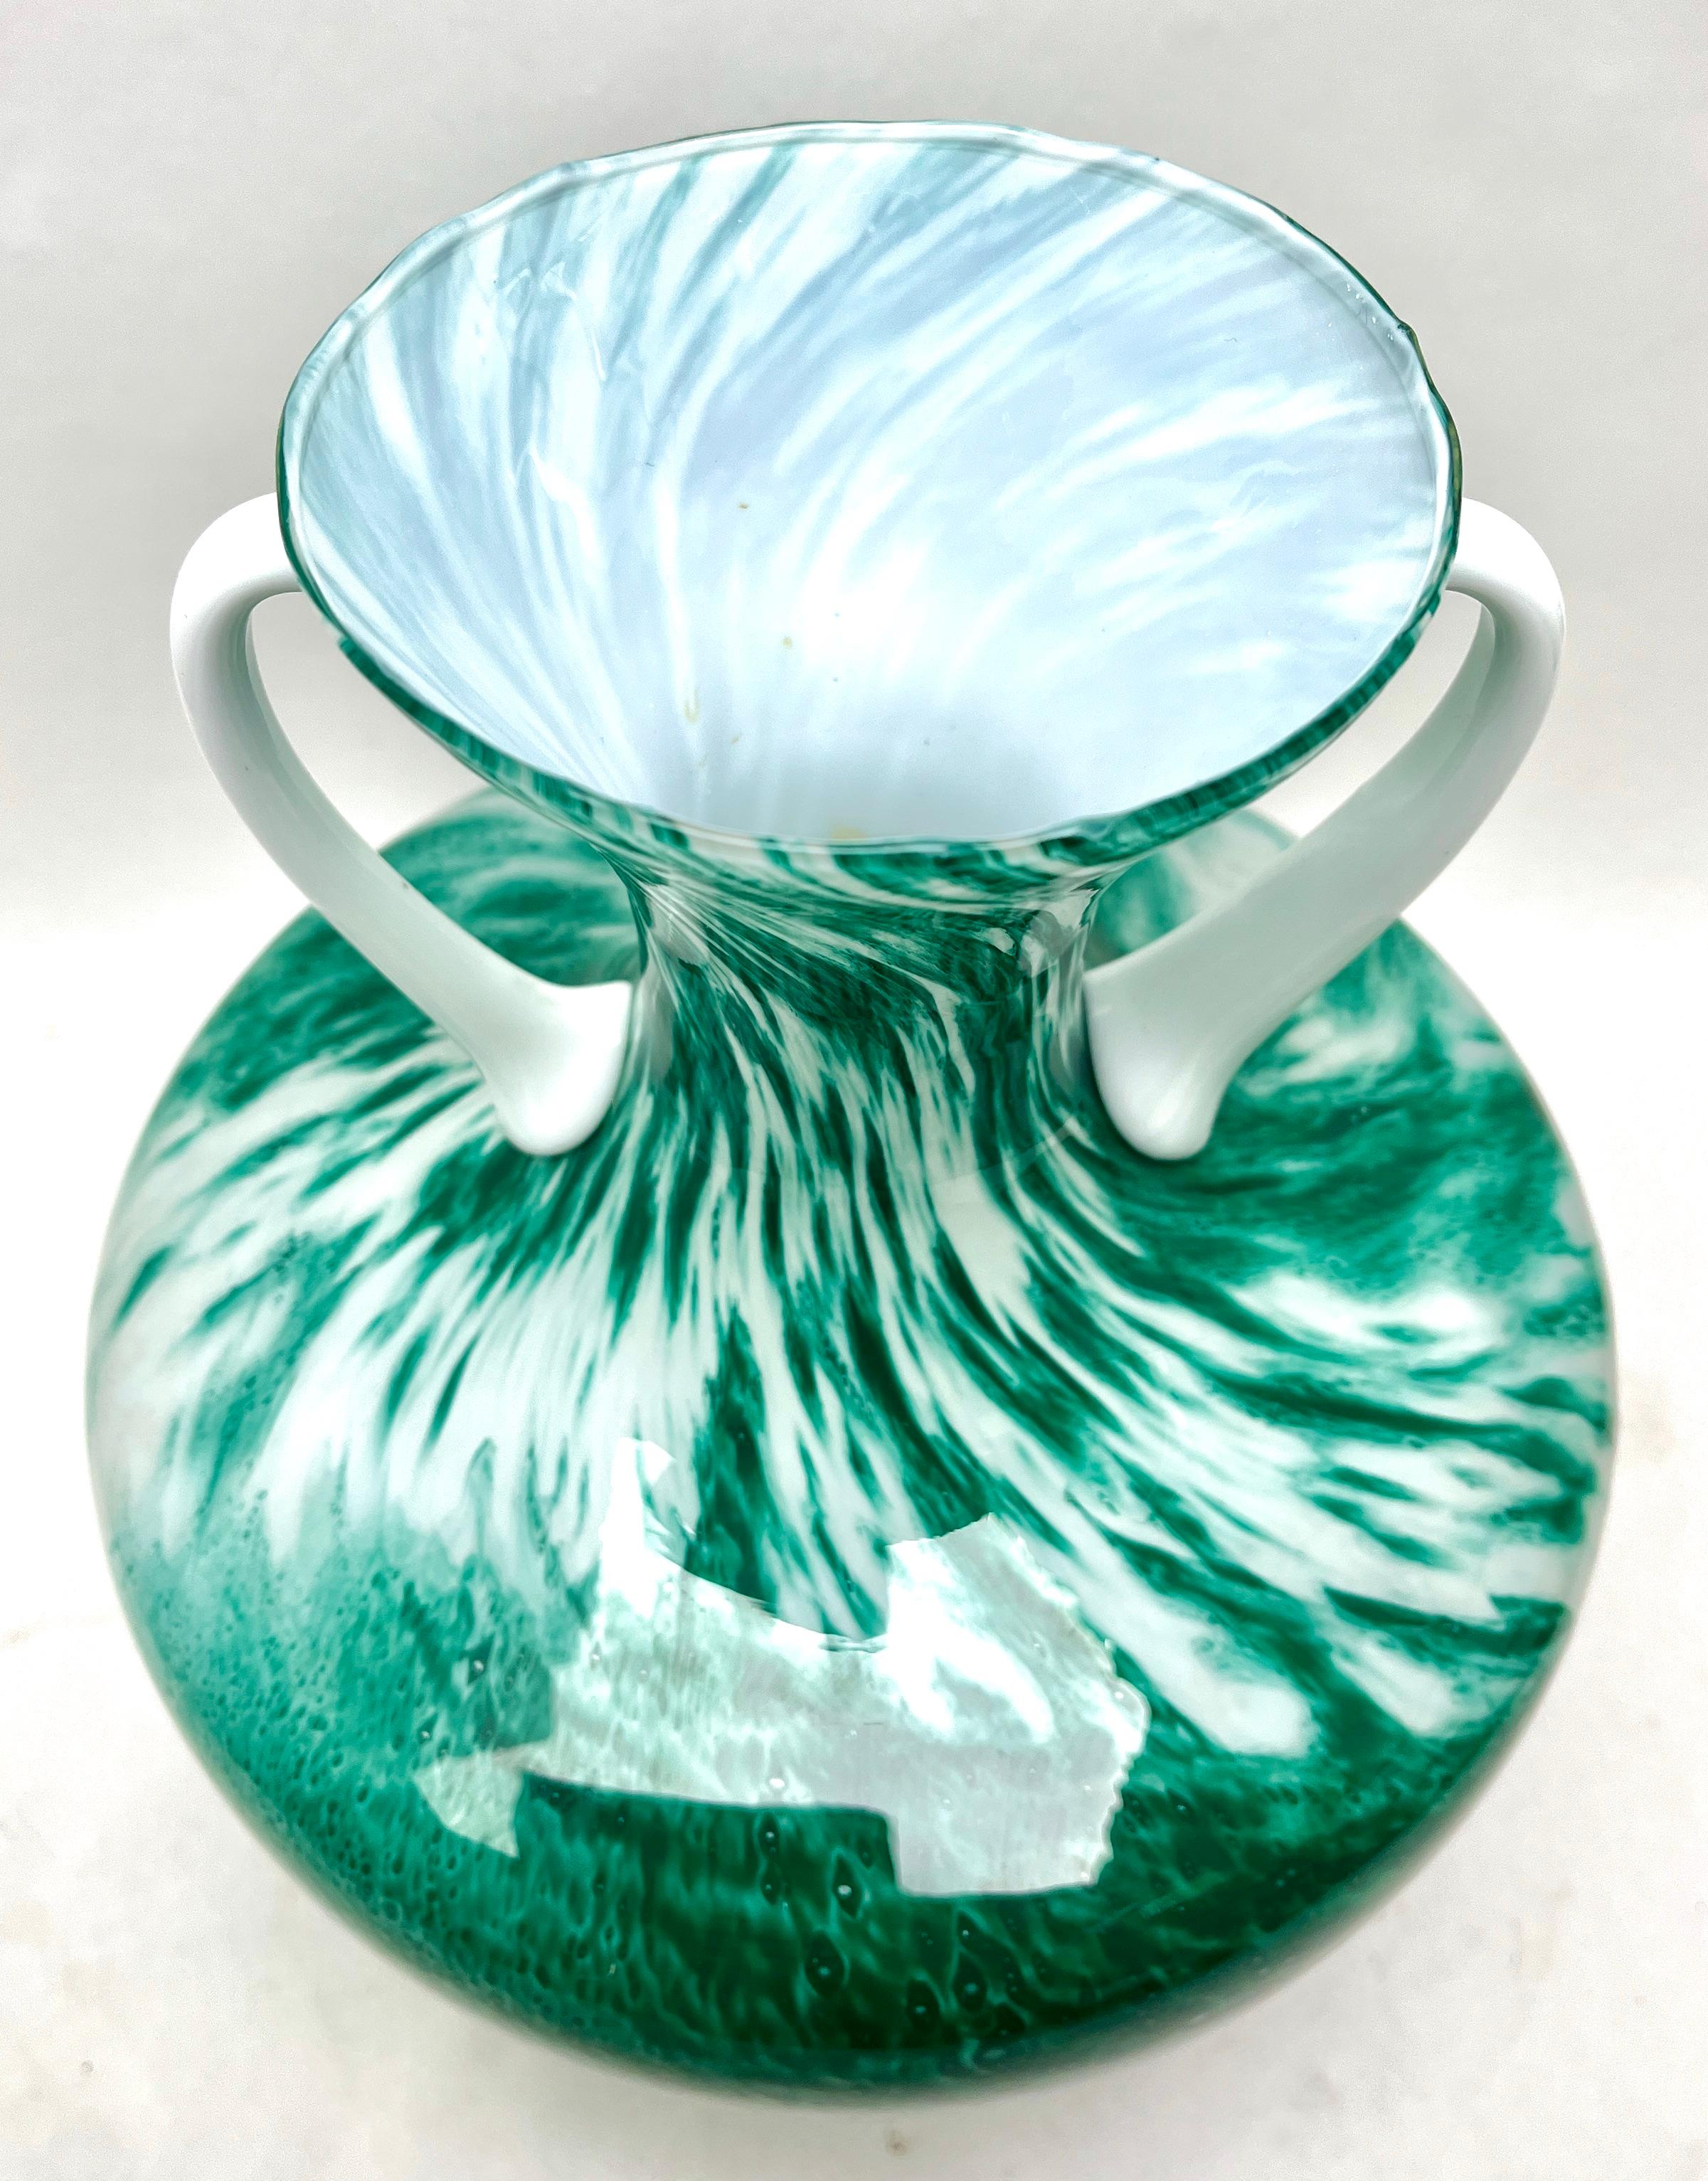 Opaline di Florence (Empoli) opalisierendes grünes und weißes italienisches Kunstglas Krug 
Schöner mundgeblasener Opal (grün, braun) und handapplizierte weiße Griffe. 
Maße: 27 cm hoch.
Das Stück ist in ausgezeichnetem Zustand und eine echte